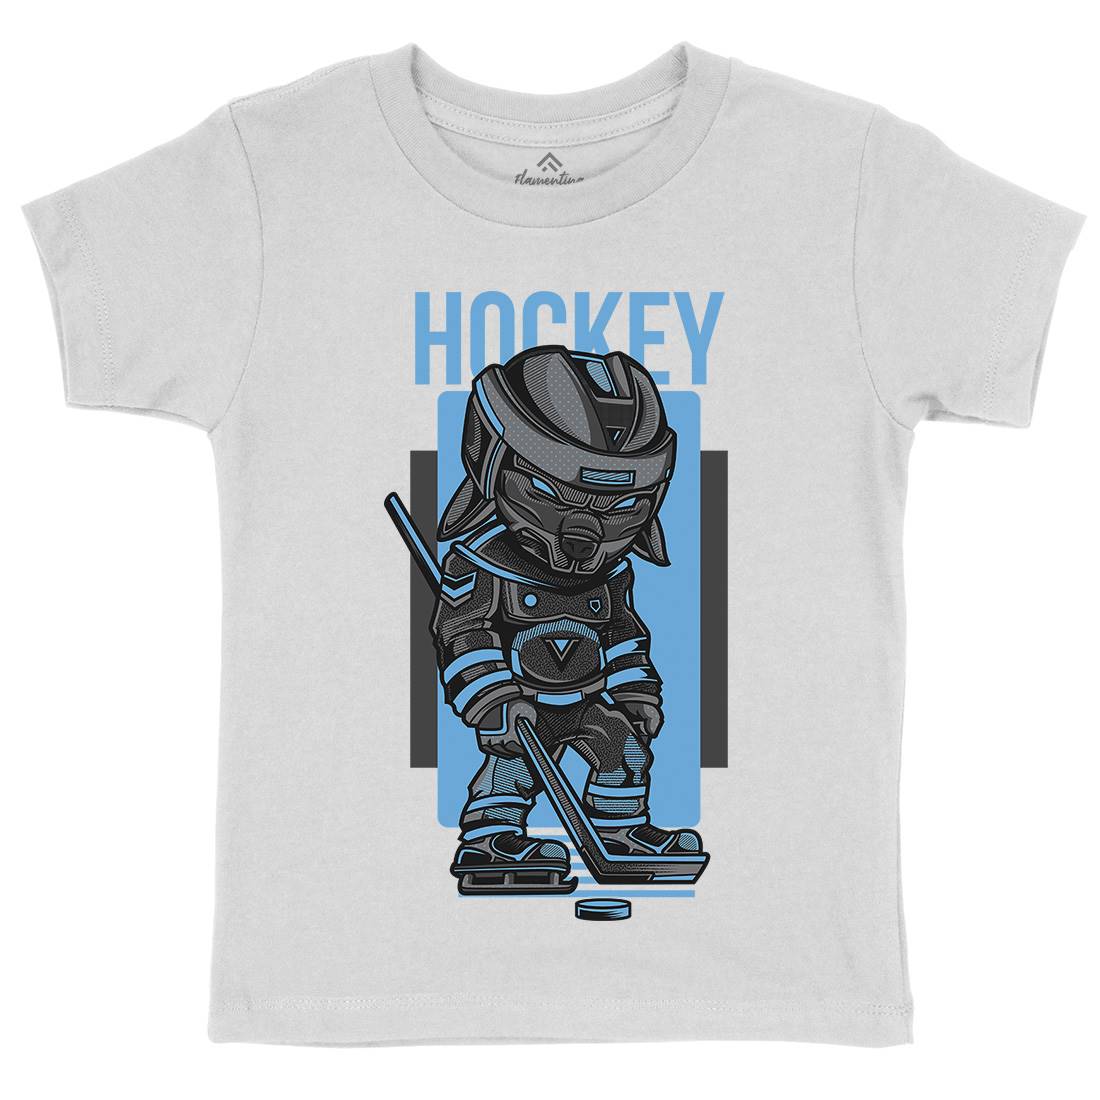 Hockey Kids Crew Neck T-Shirt Sport D614